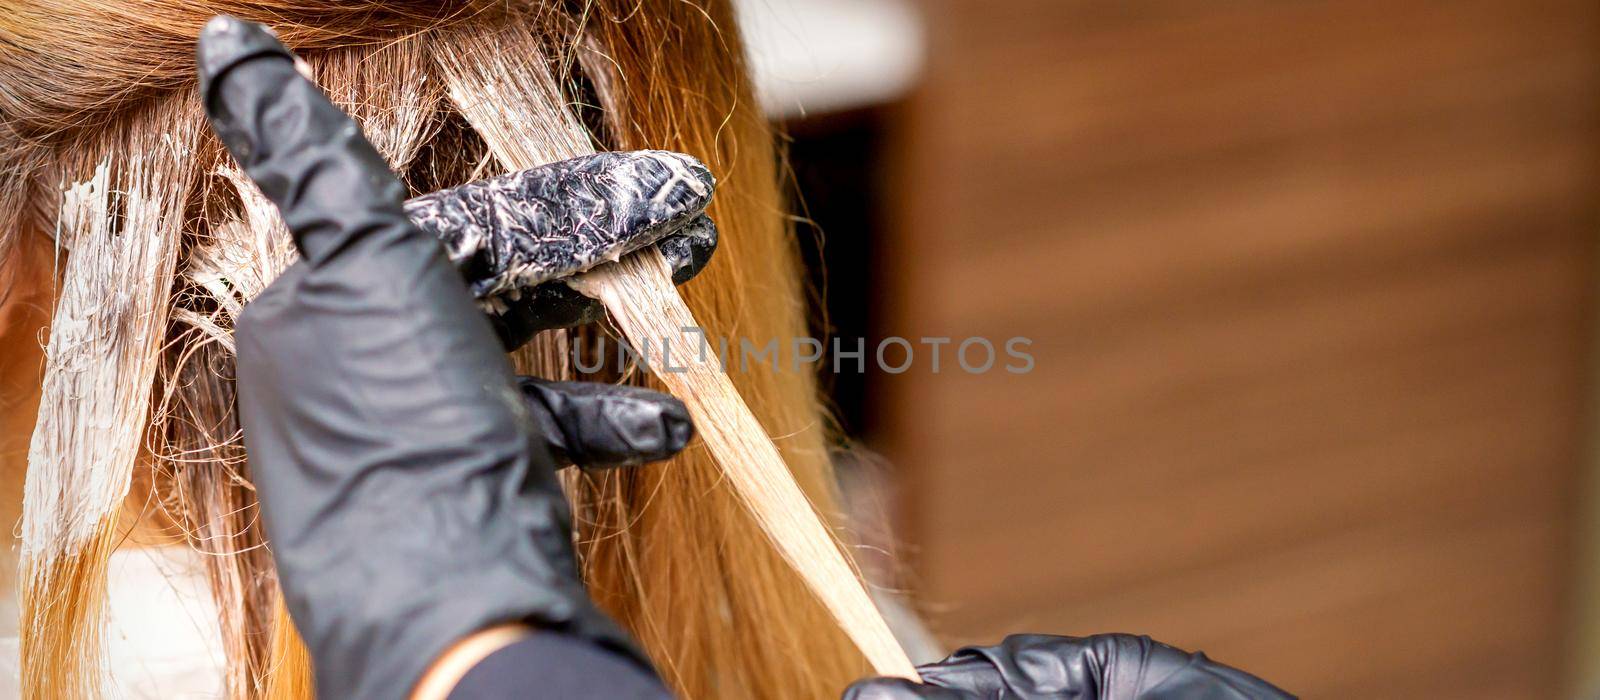 Hairdresser applying dye to strand of hair by okskukuruza